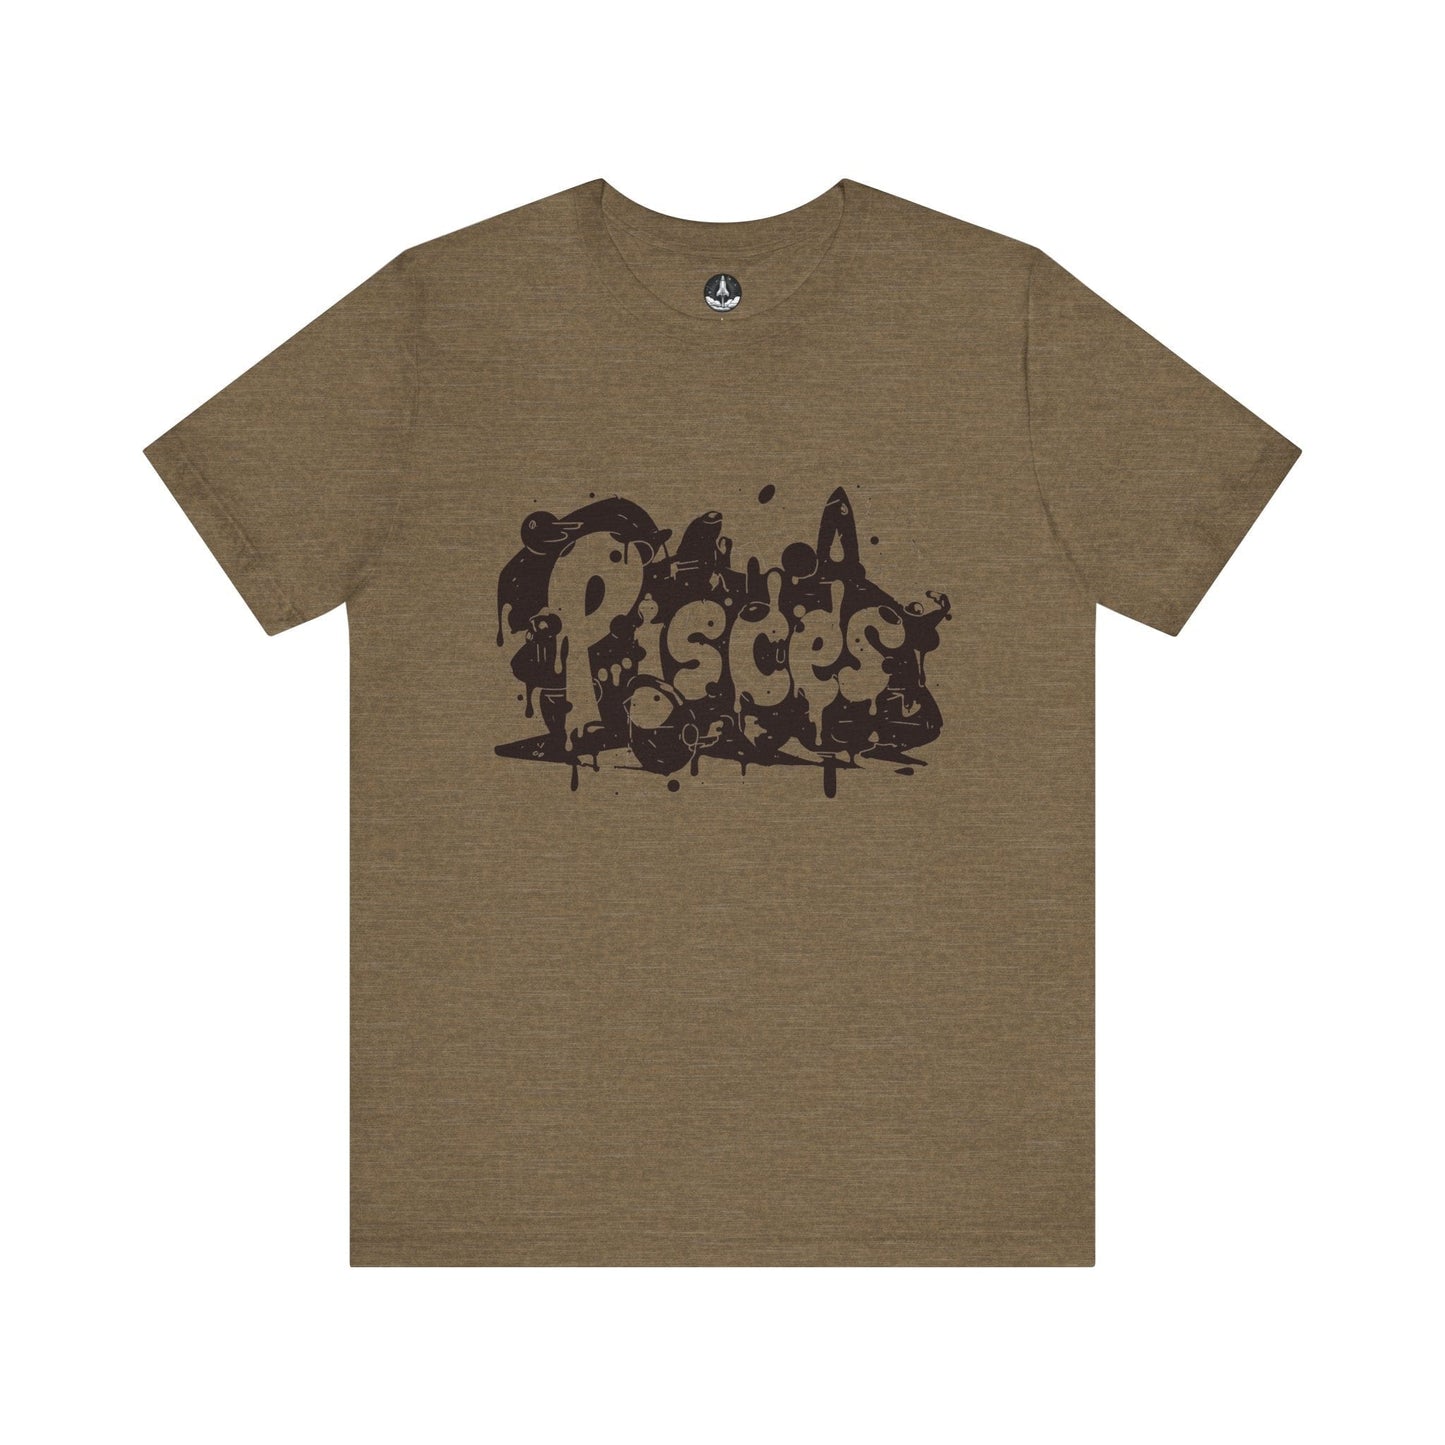 T-Shirt Heather Olive / S Piscean Inkflow TShirt: Depth of Imagination